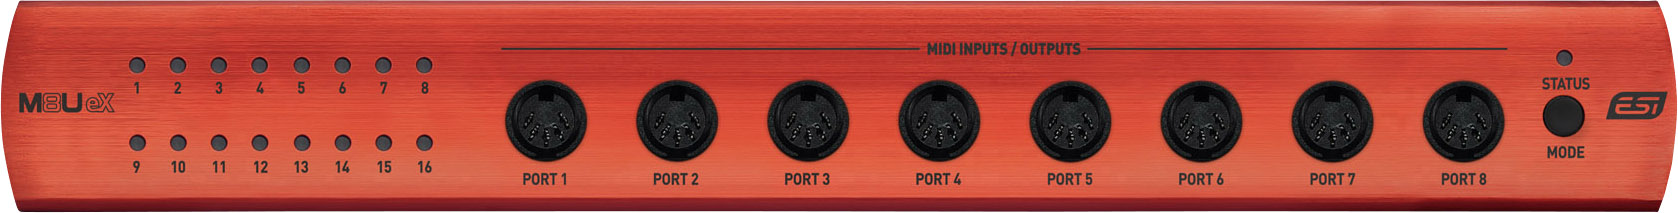 ESI audio MIDI Interface M8U EX